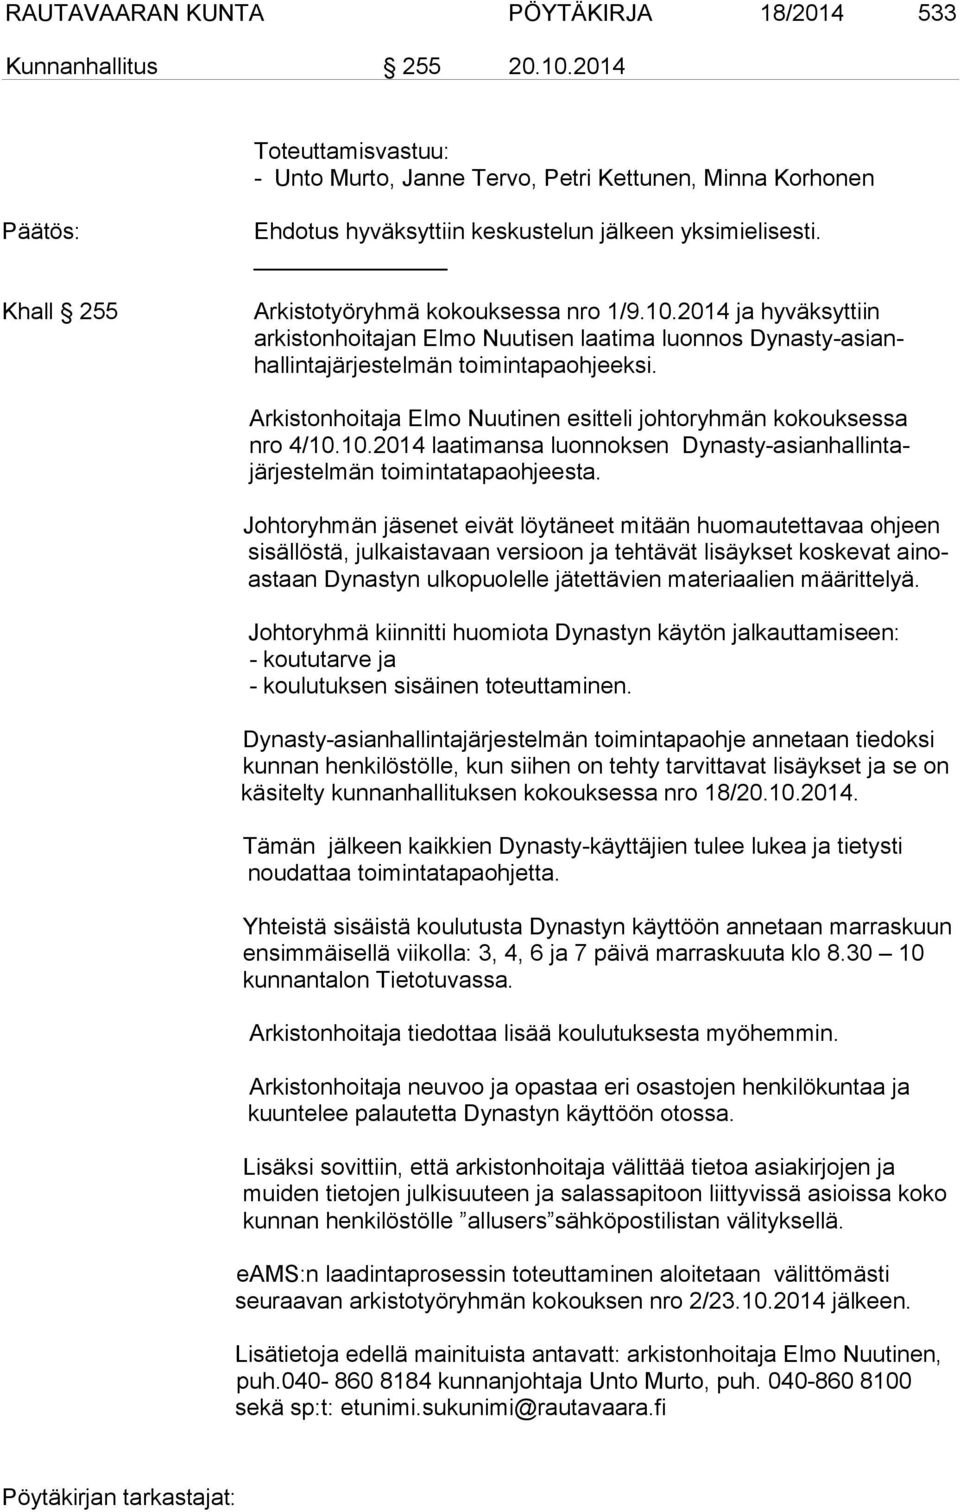 2014 ja hyväksyttiin arkistonhoitajan Elmo Nuutisen laatima luonnos Dynasty-asianhallintajärjestelmän toimintapaohjeeksi. Arkistonhoitaja Elmo Nuutinen esitteli johtoryhmän kokouksessa nro 4/10.